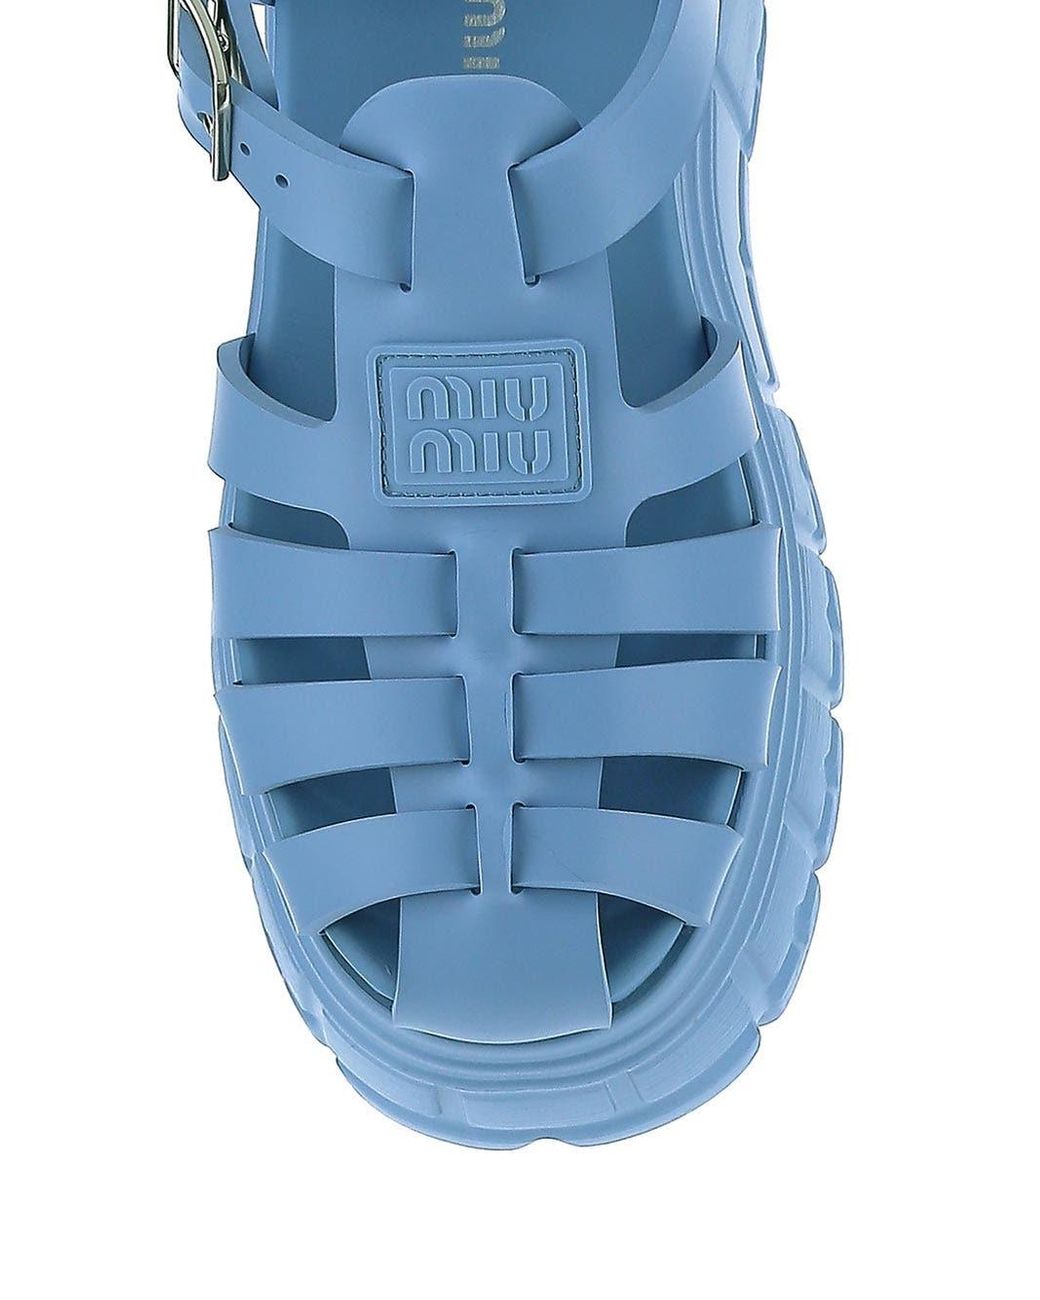 Miu Miu Rubber Flatform Sandals in Blue - Lyst